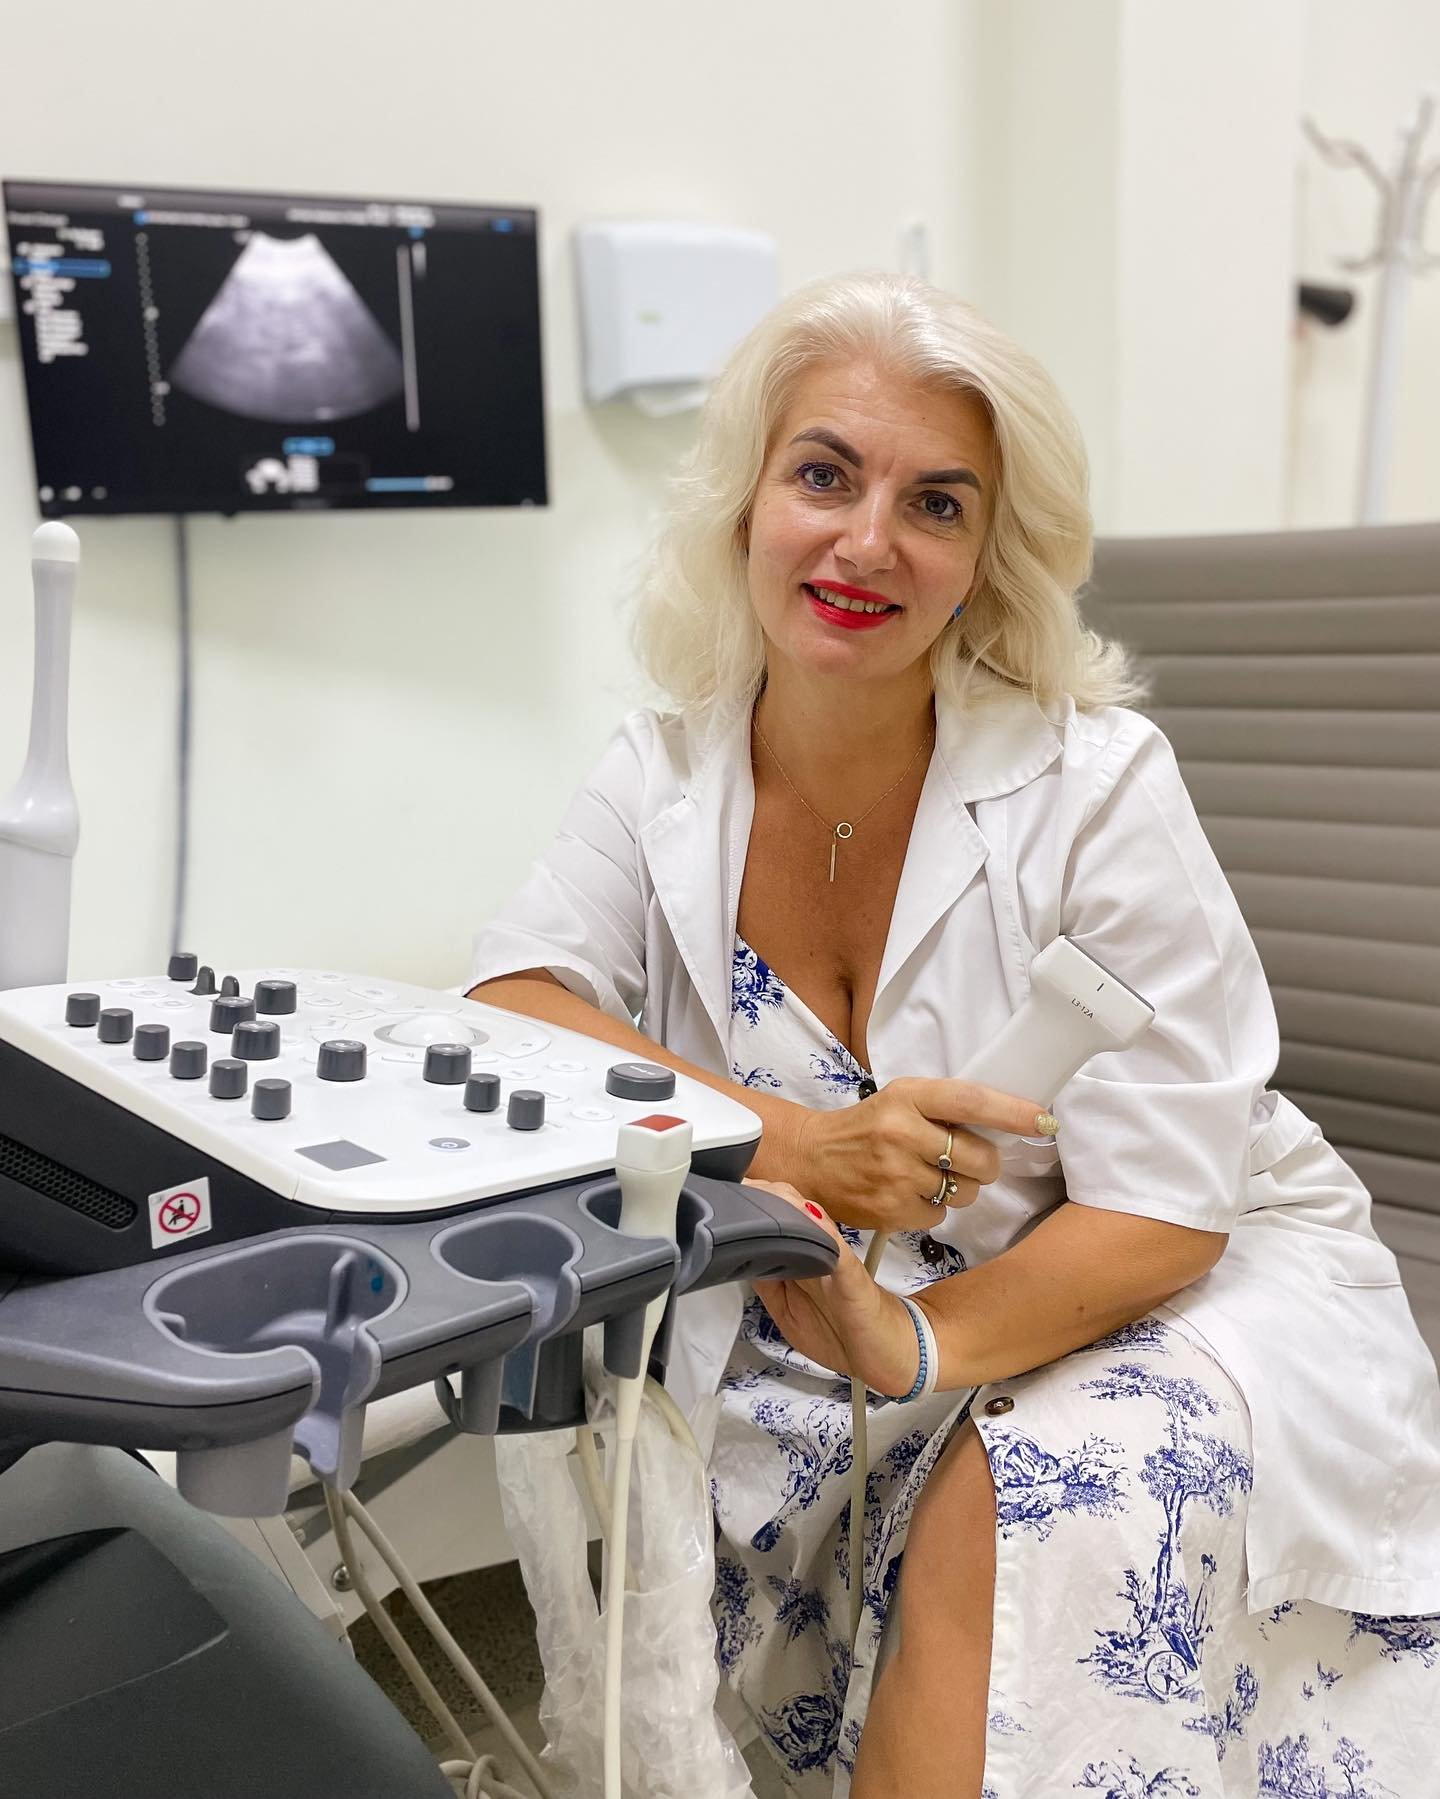 Експерт в області ультразвукової діагностики — Ковач Наталія Володимирівна приймає у медичному центрі «Вітамін» - Медичний центр Вітамін